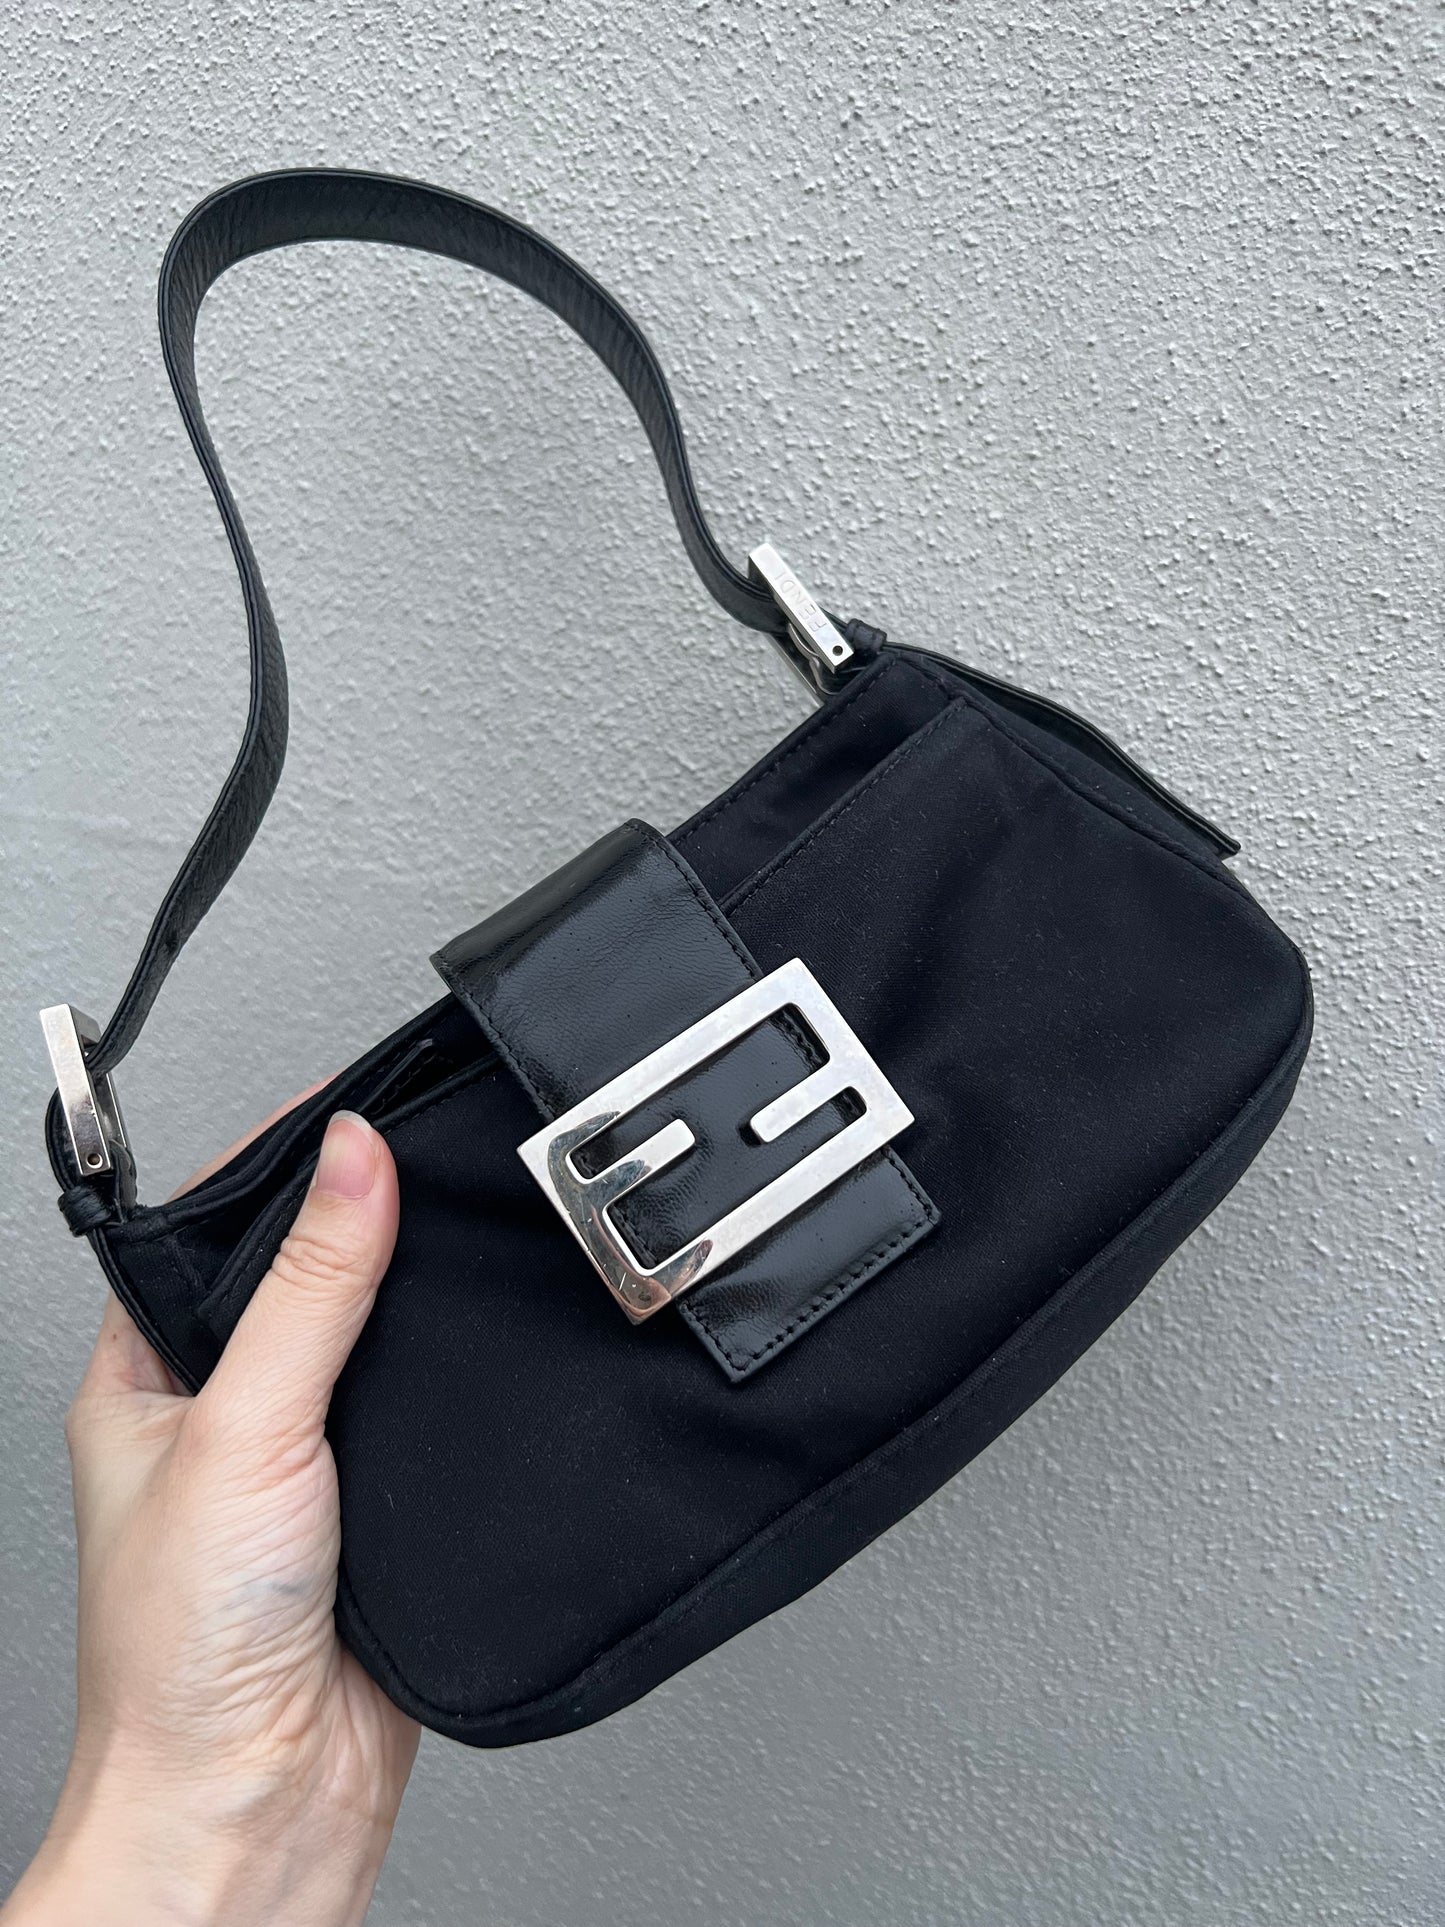 Pre-loved Fendi Mini Baguette Handbag Black